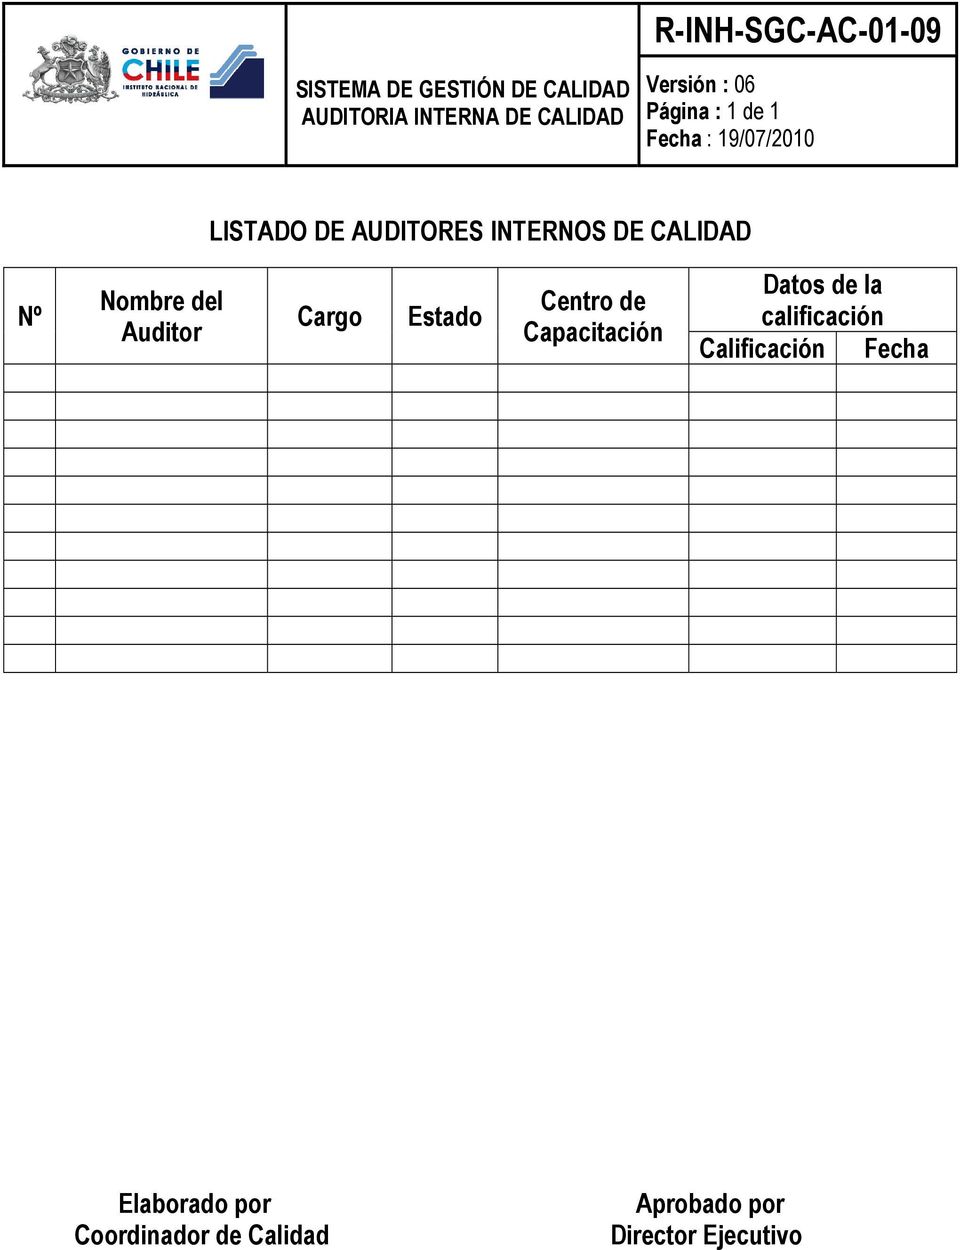 Auditor Cargo Estado Centro de Capacitación Datos de la calificación